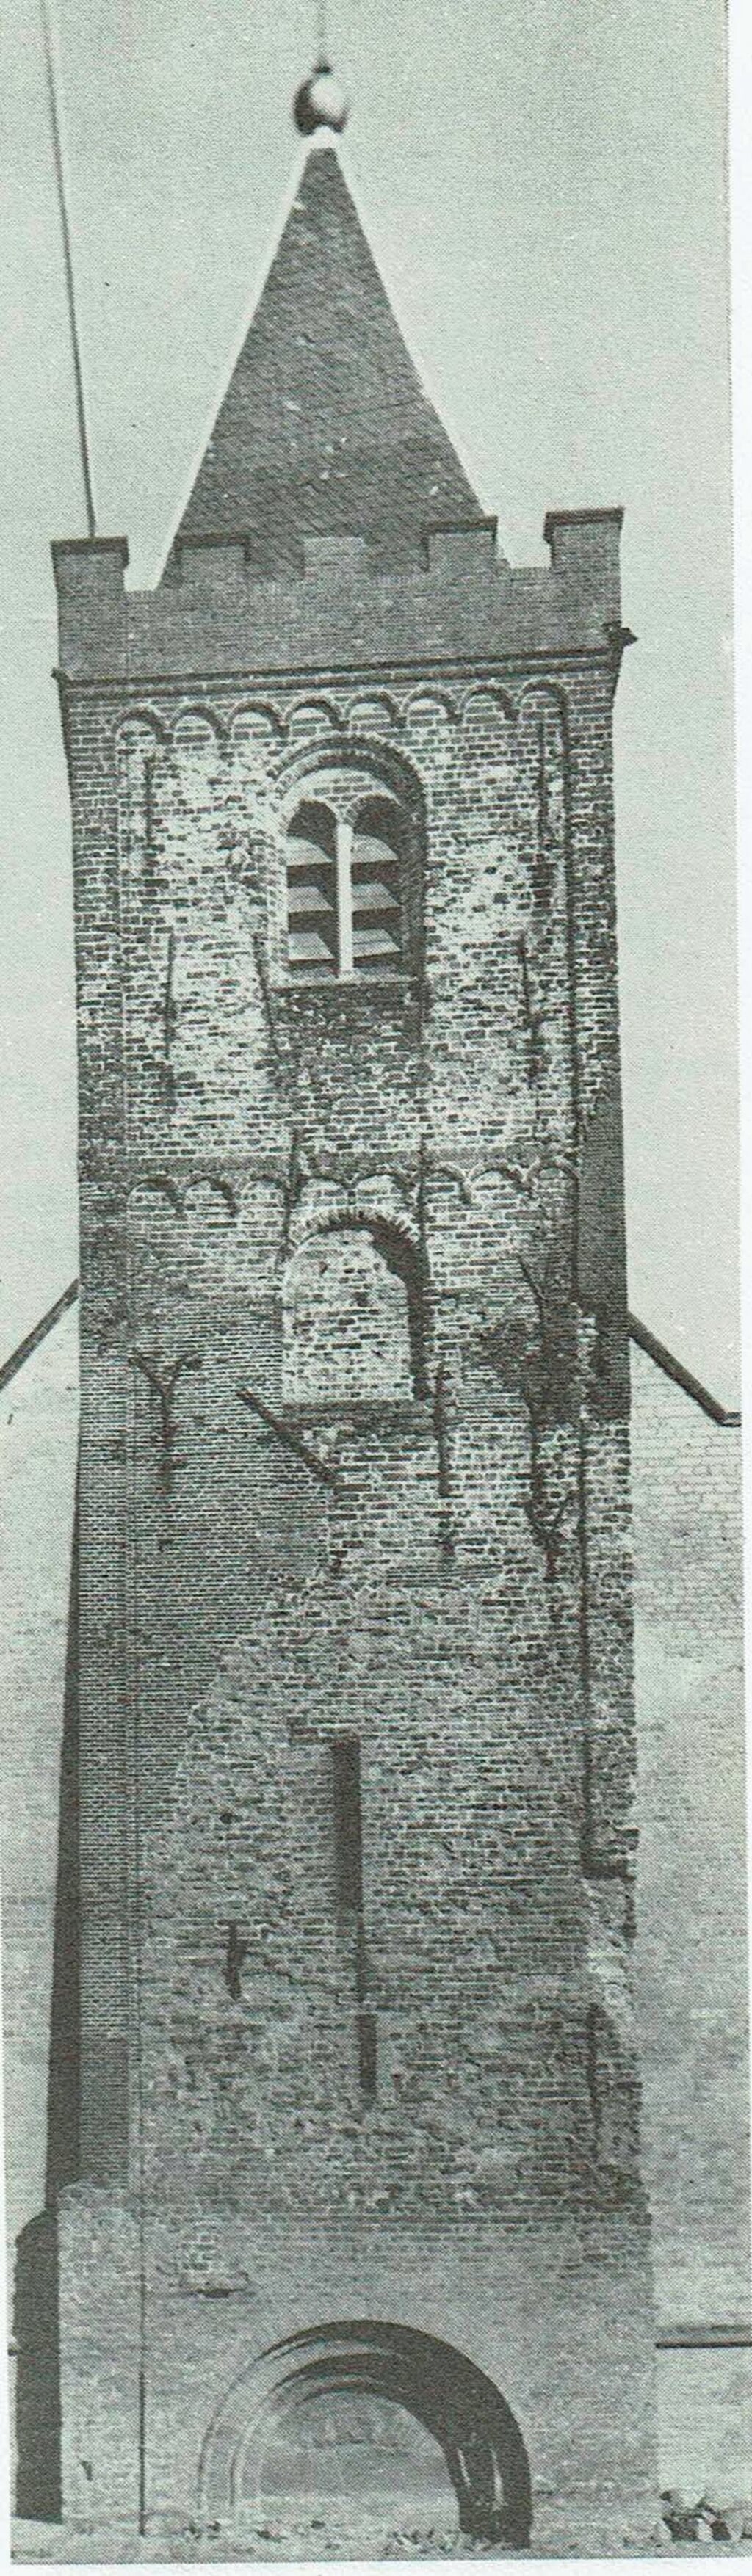 De  romaanse toren uit de twaalfde eeuw.